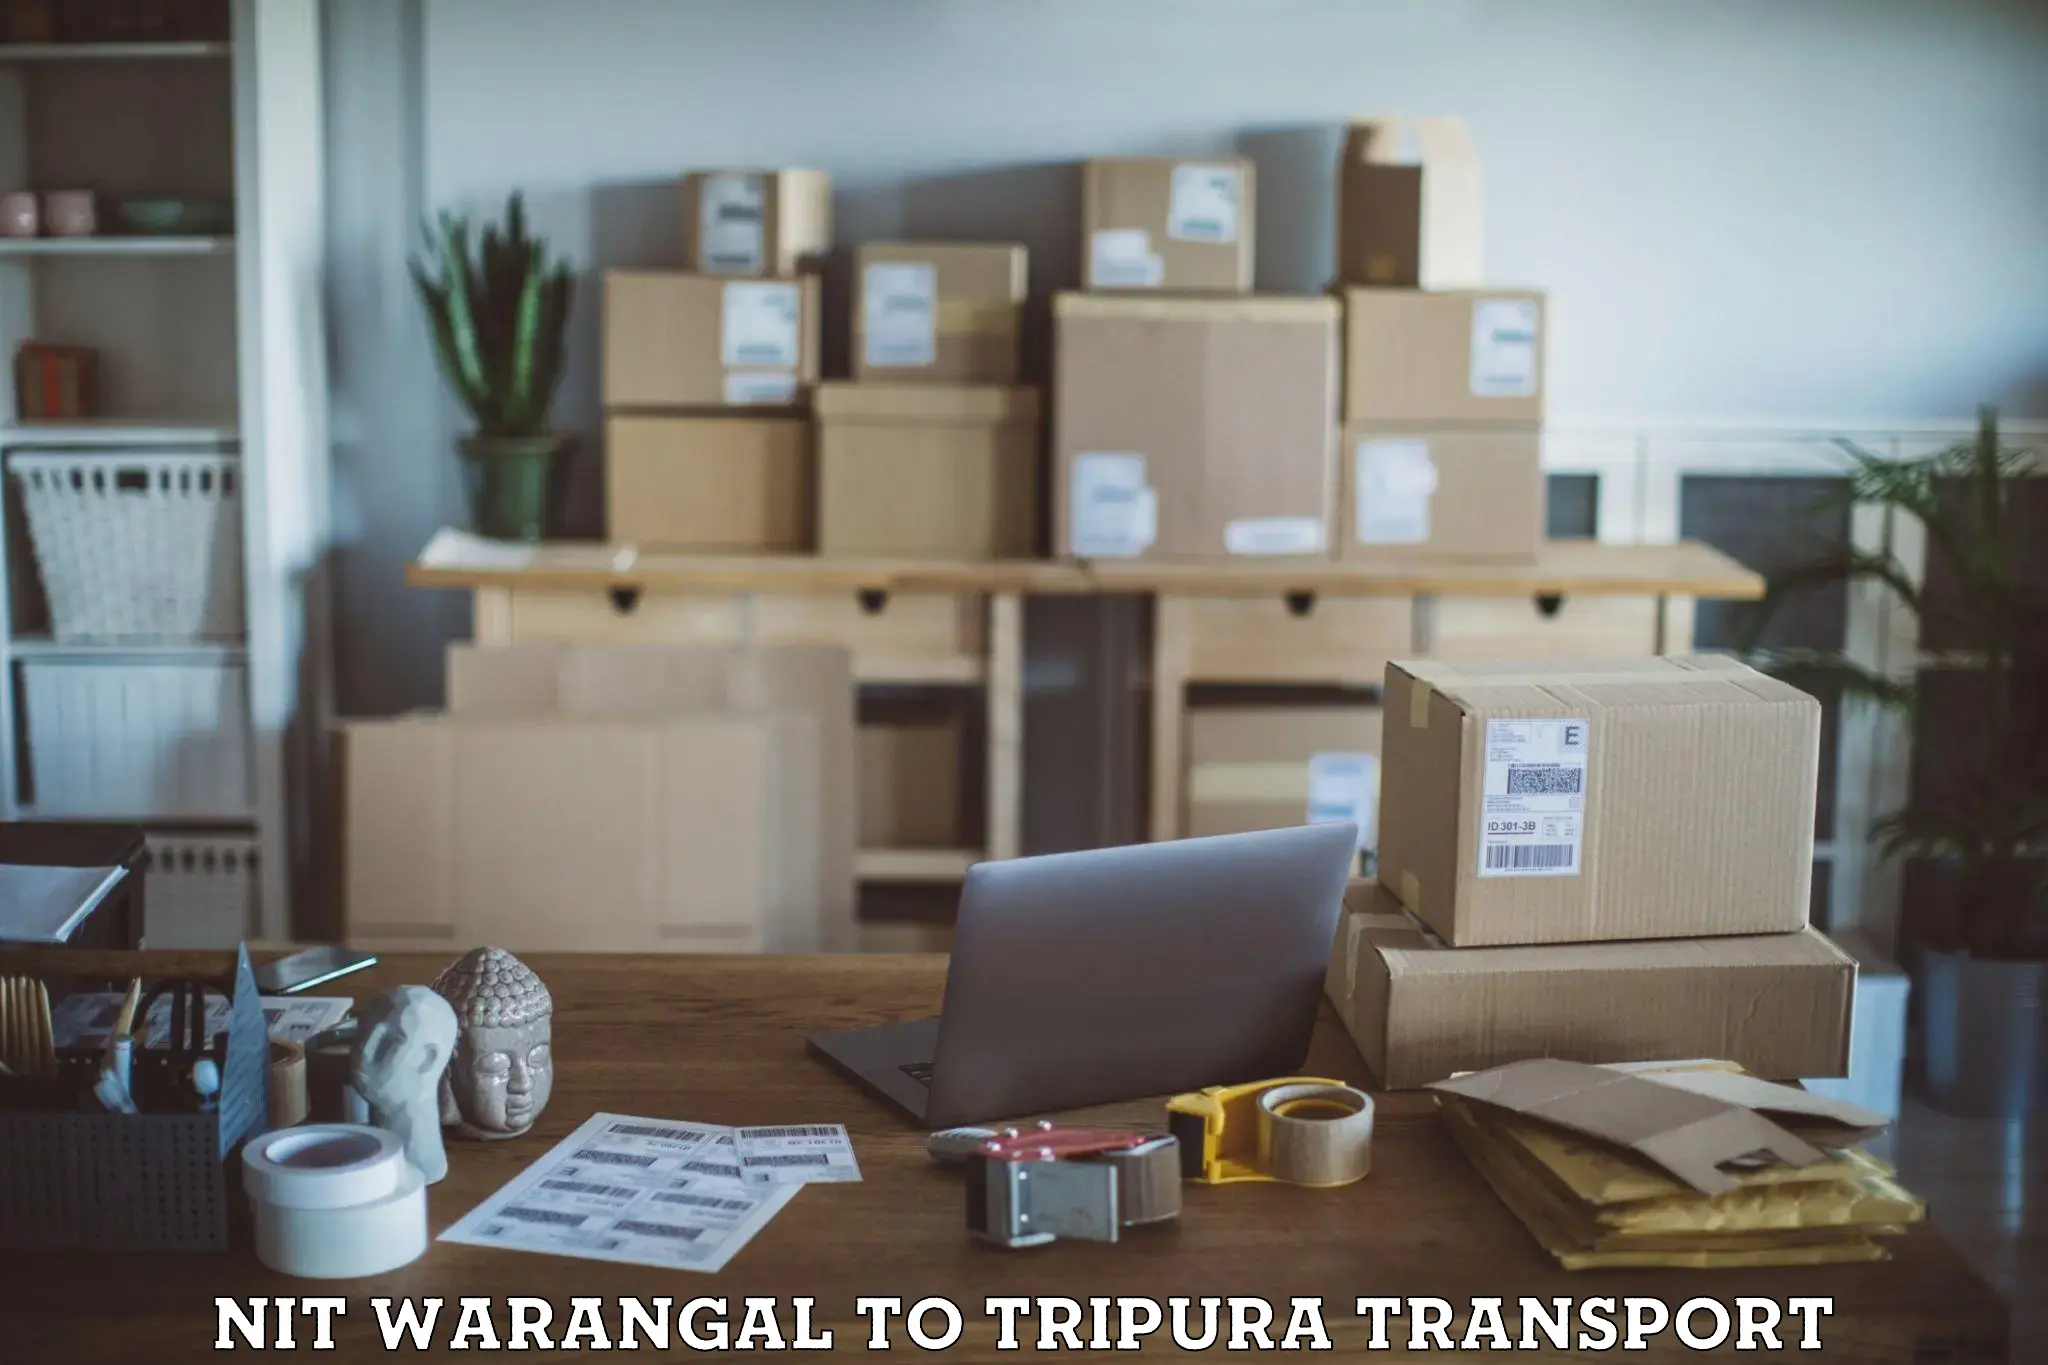 Express transport services NIT Warangal to Udaipur Tripura